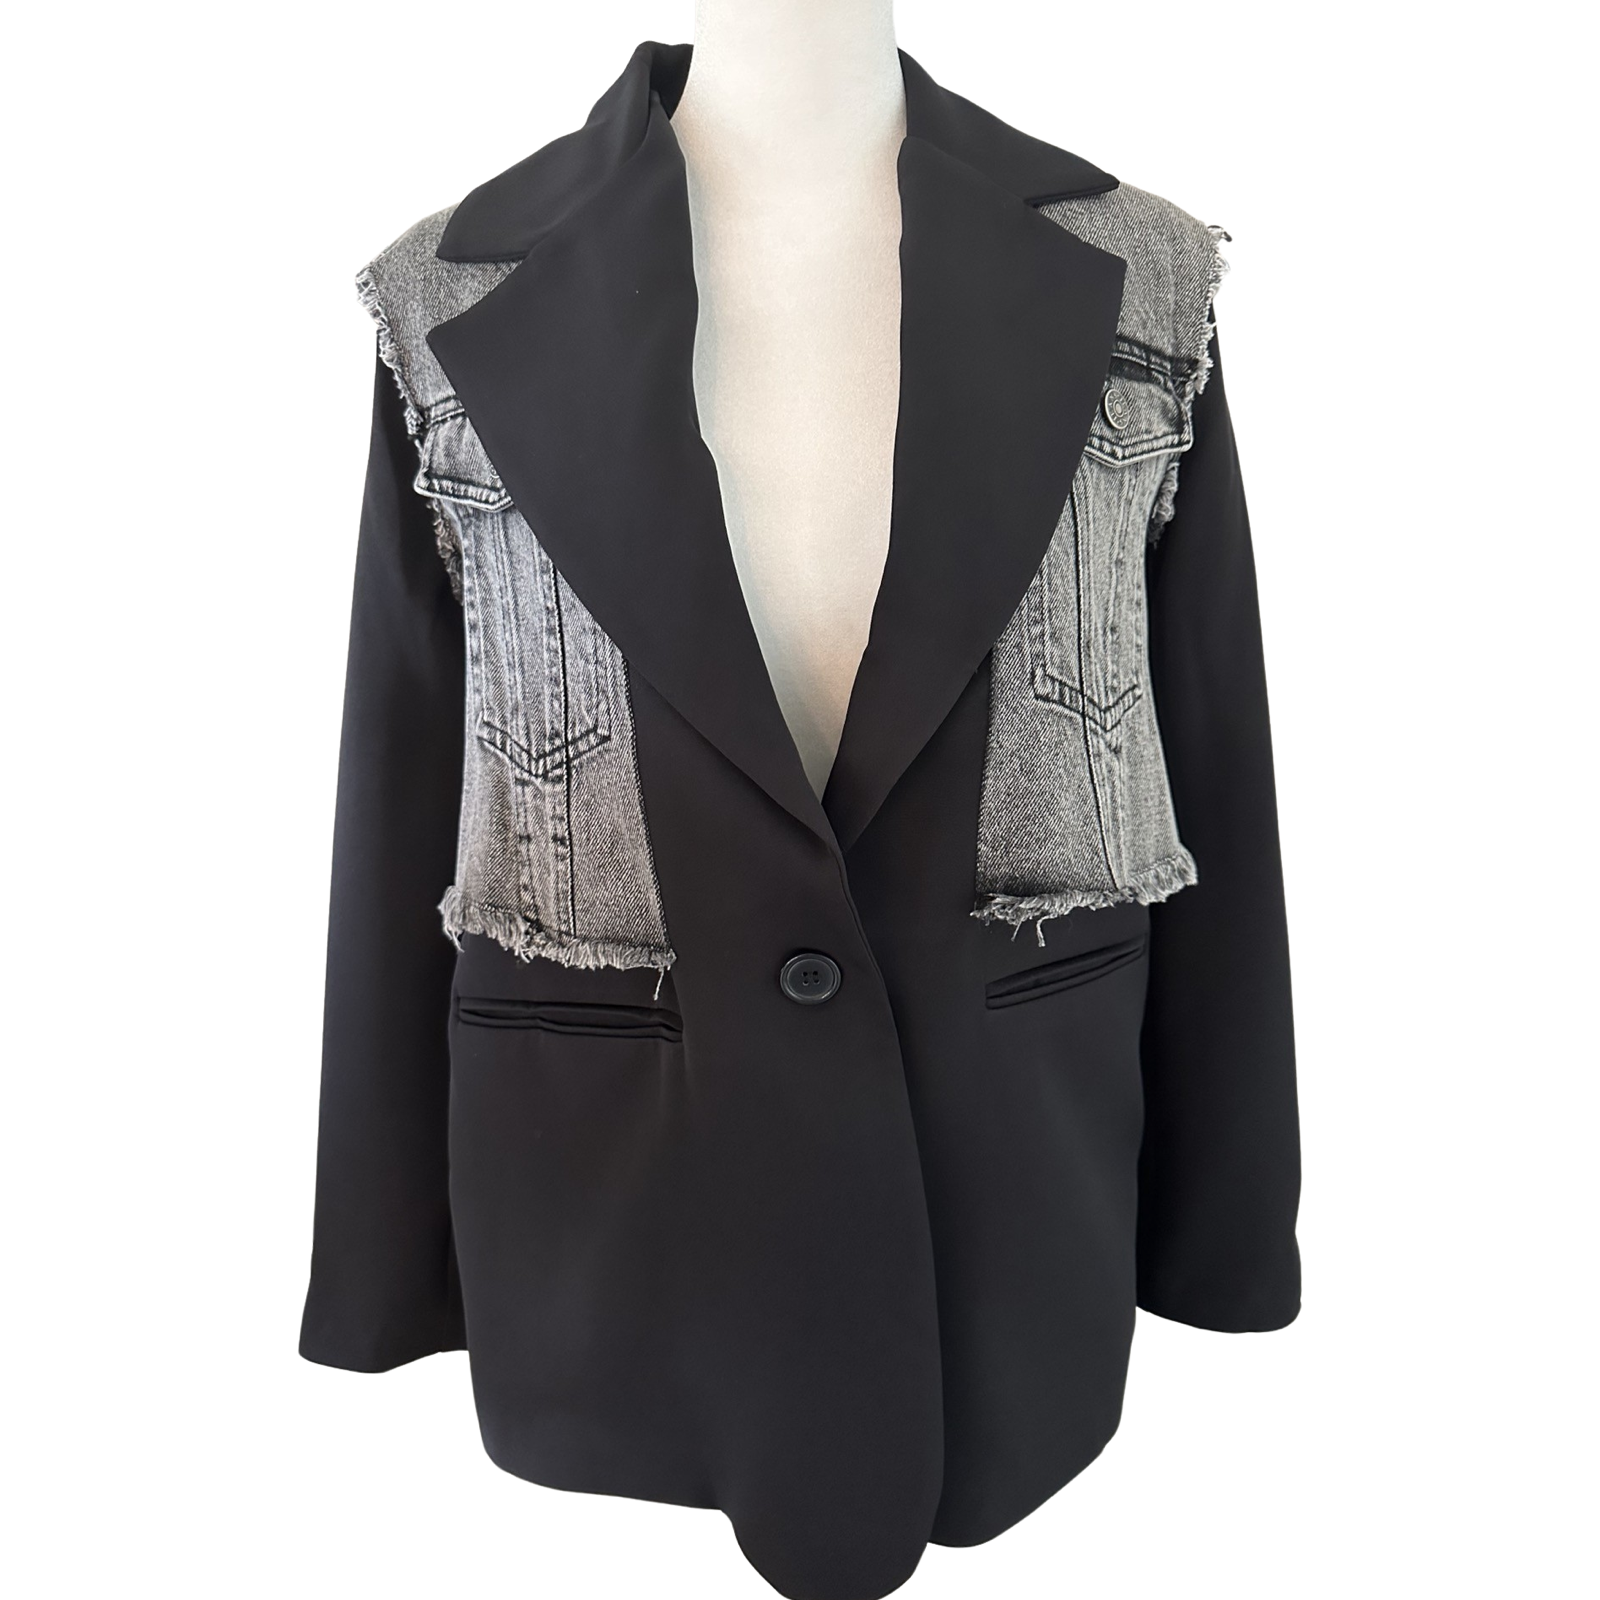 Gala blazer jacket with denim